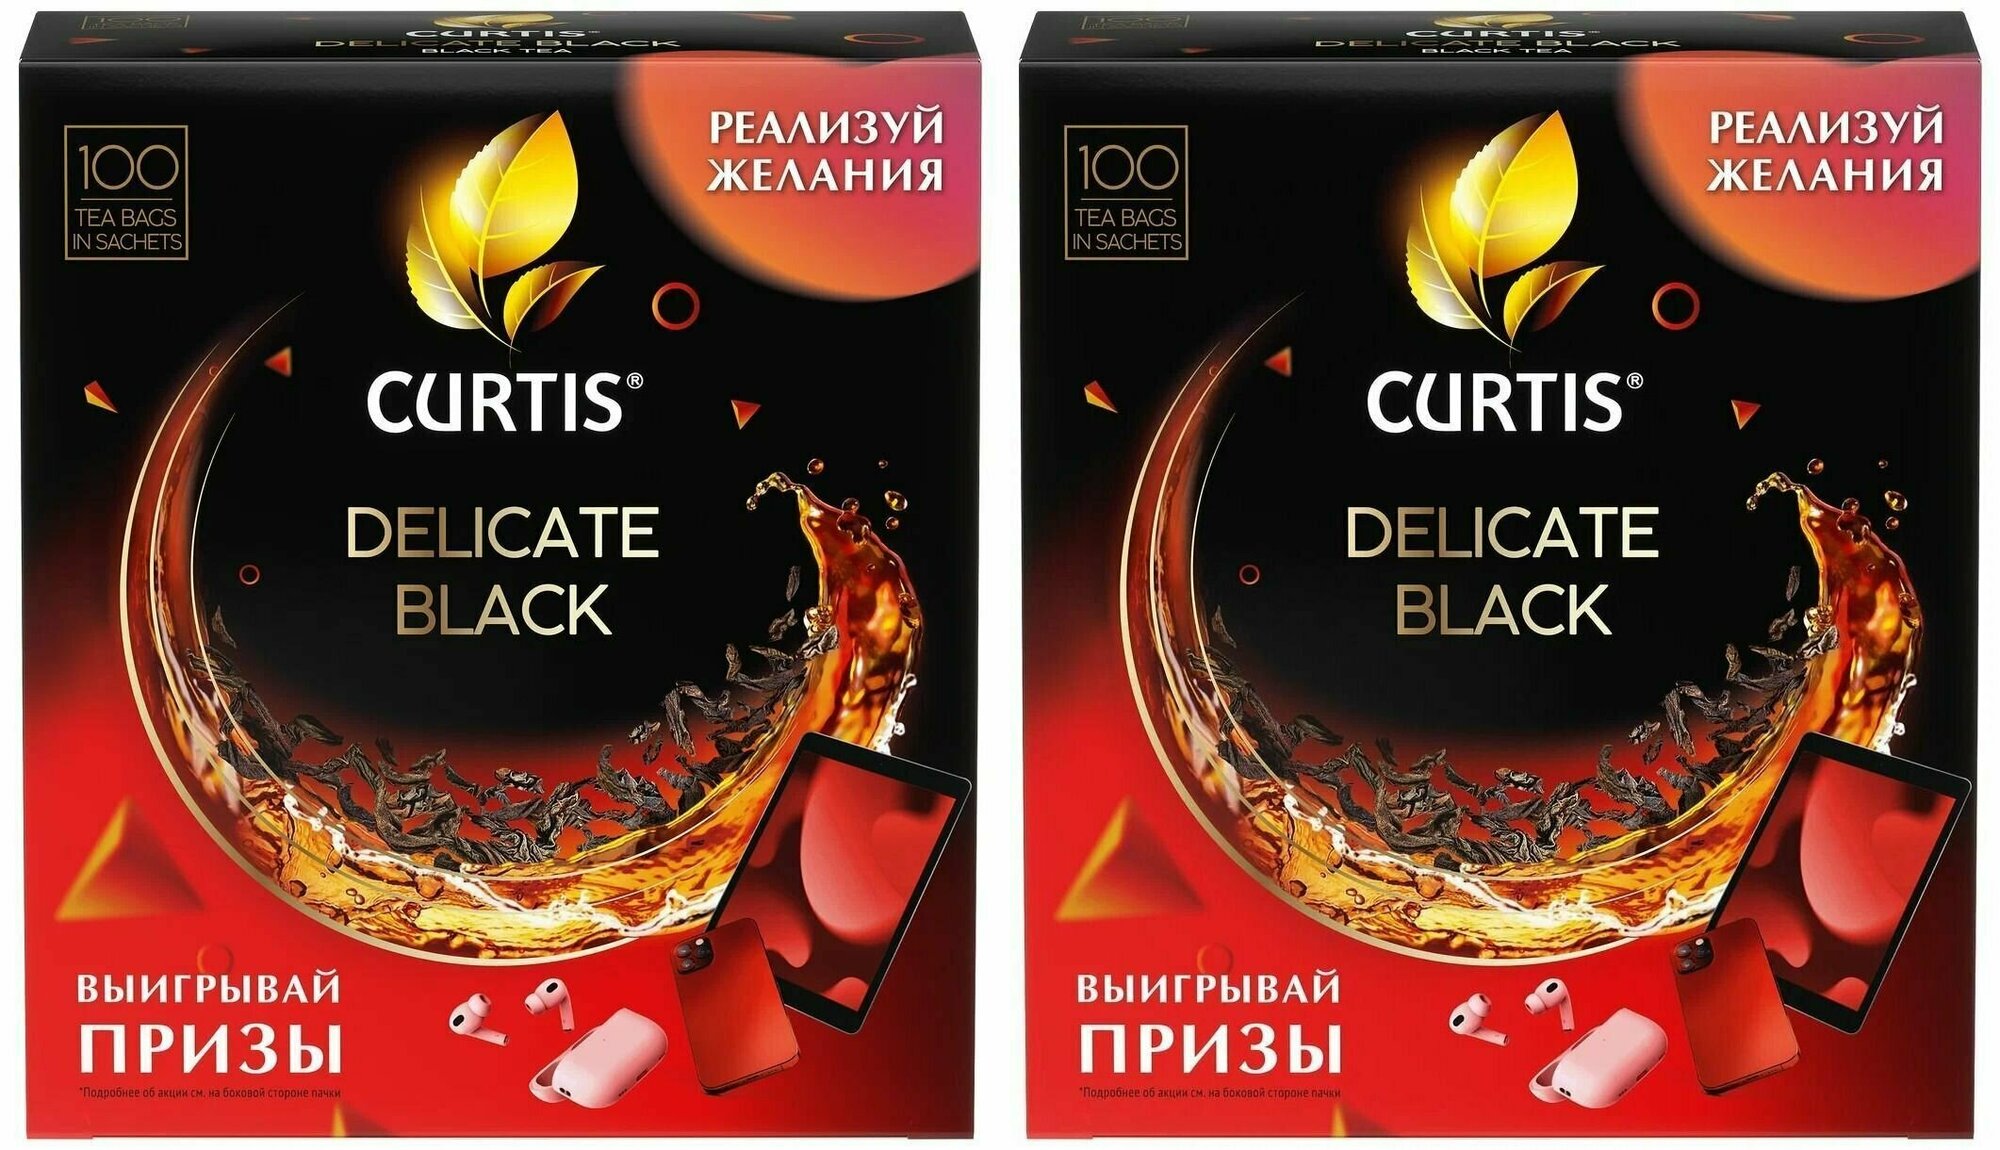 Curtis Чай Delicate Black, черный, 100 пакетиков, 2 шт